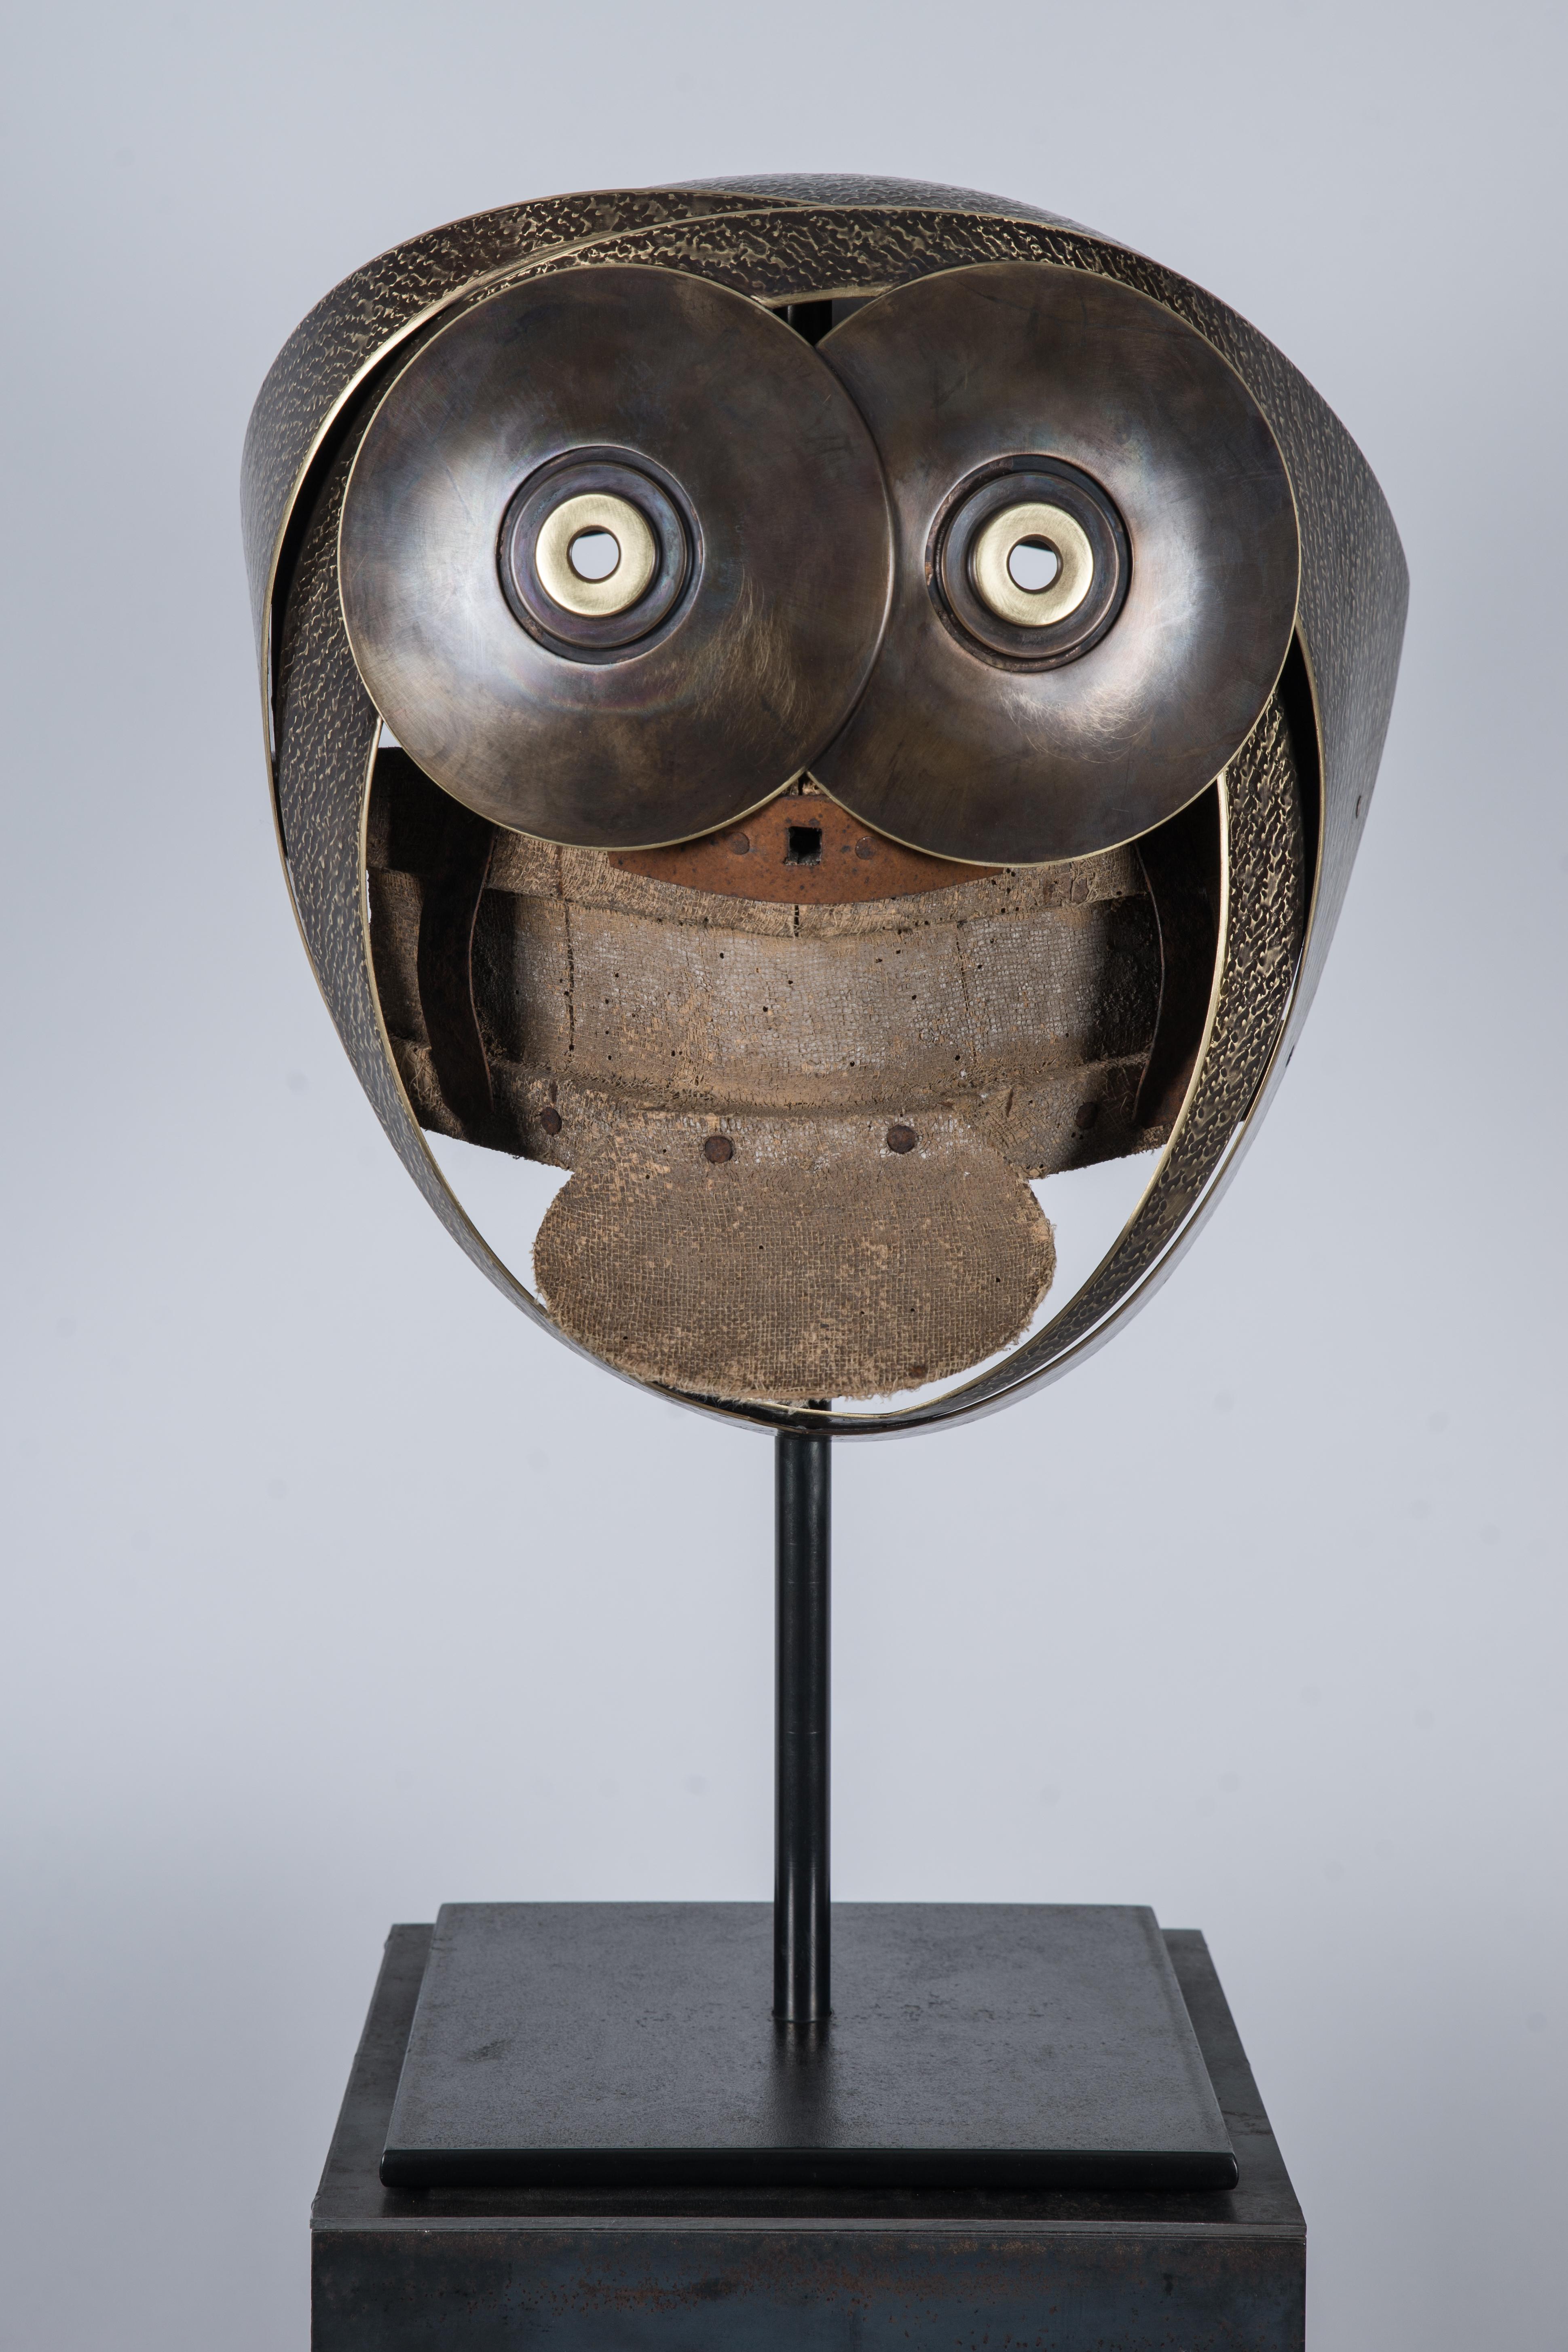 Elie Hirsch Abstract Sculpture - Mask "The Monkey" Brass Wood Sculpture